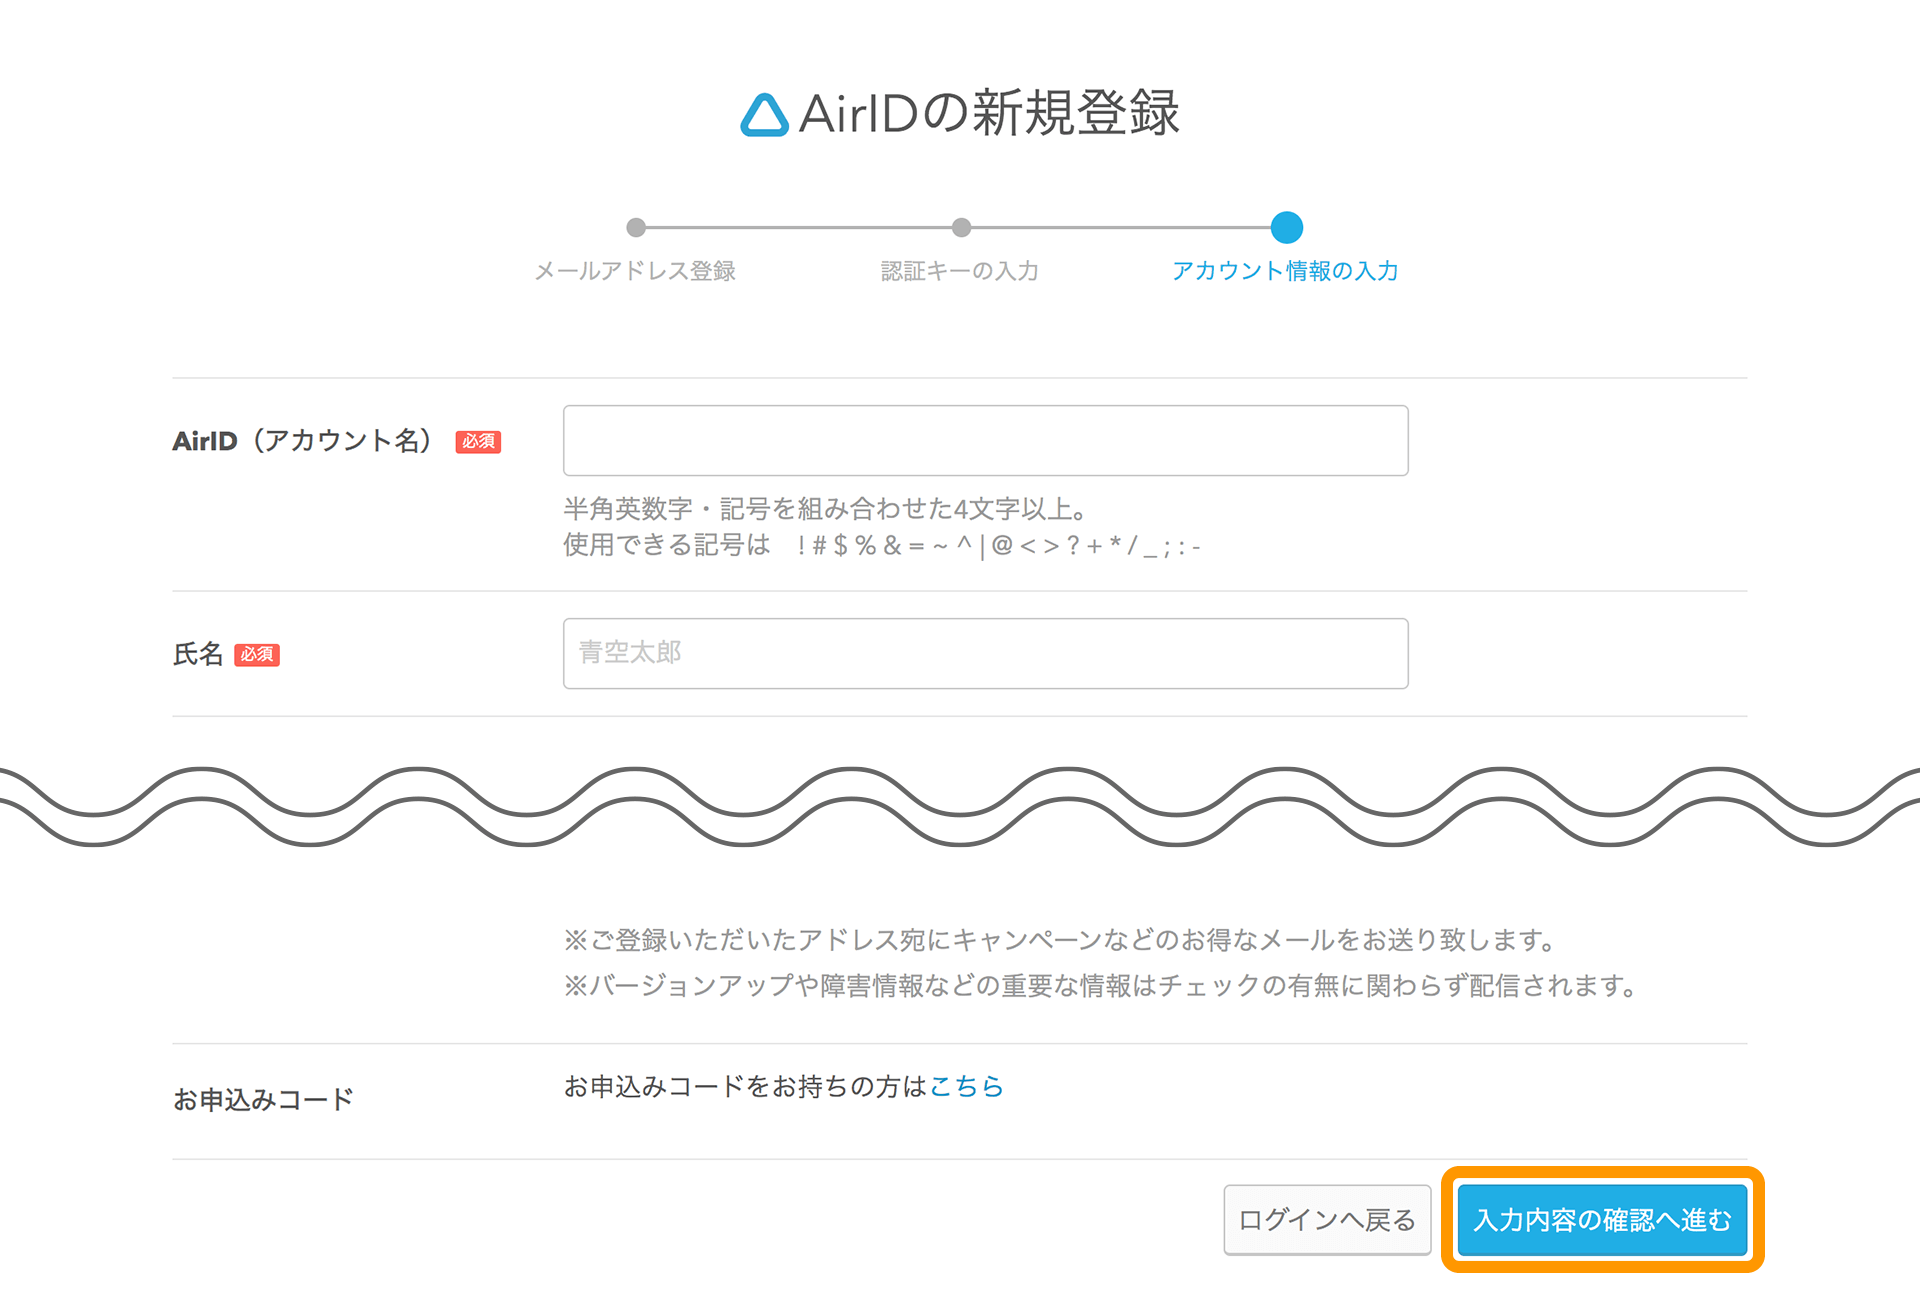 AirID AirIDの新規登録画面 アカウント情報と店舗情報の入力